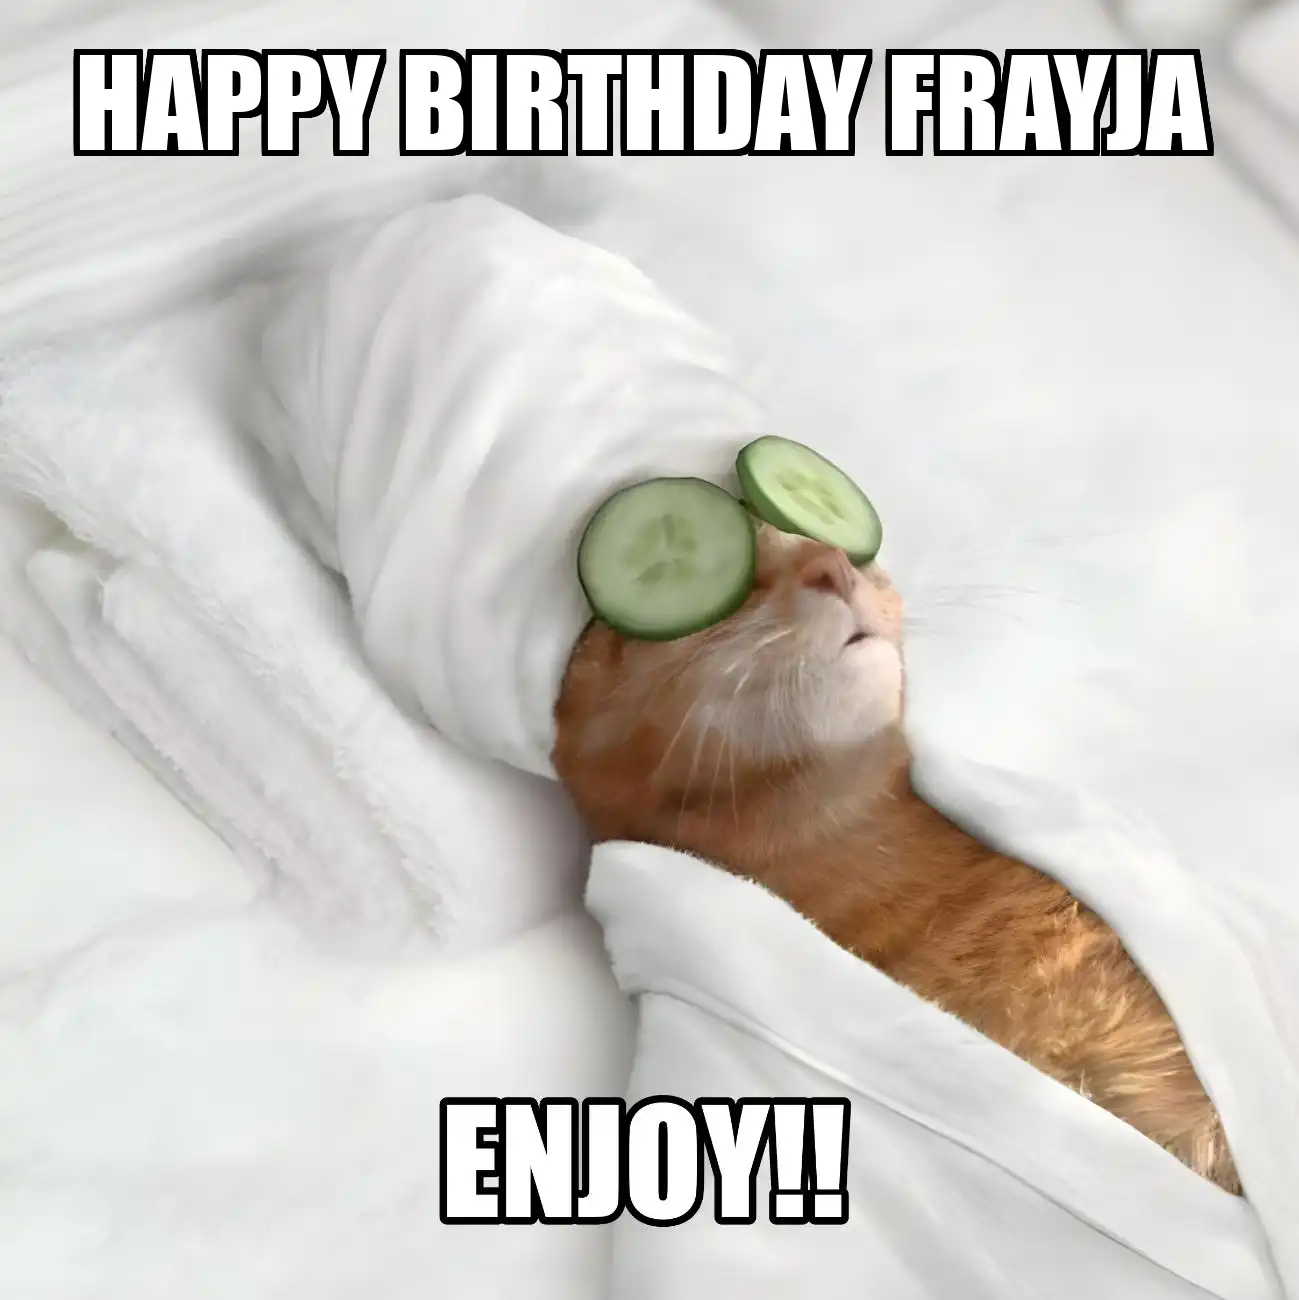 Happy Birthday Frayja Enjoy Cat Meme